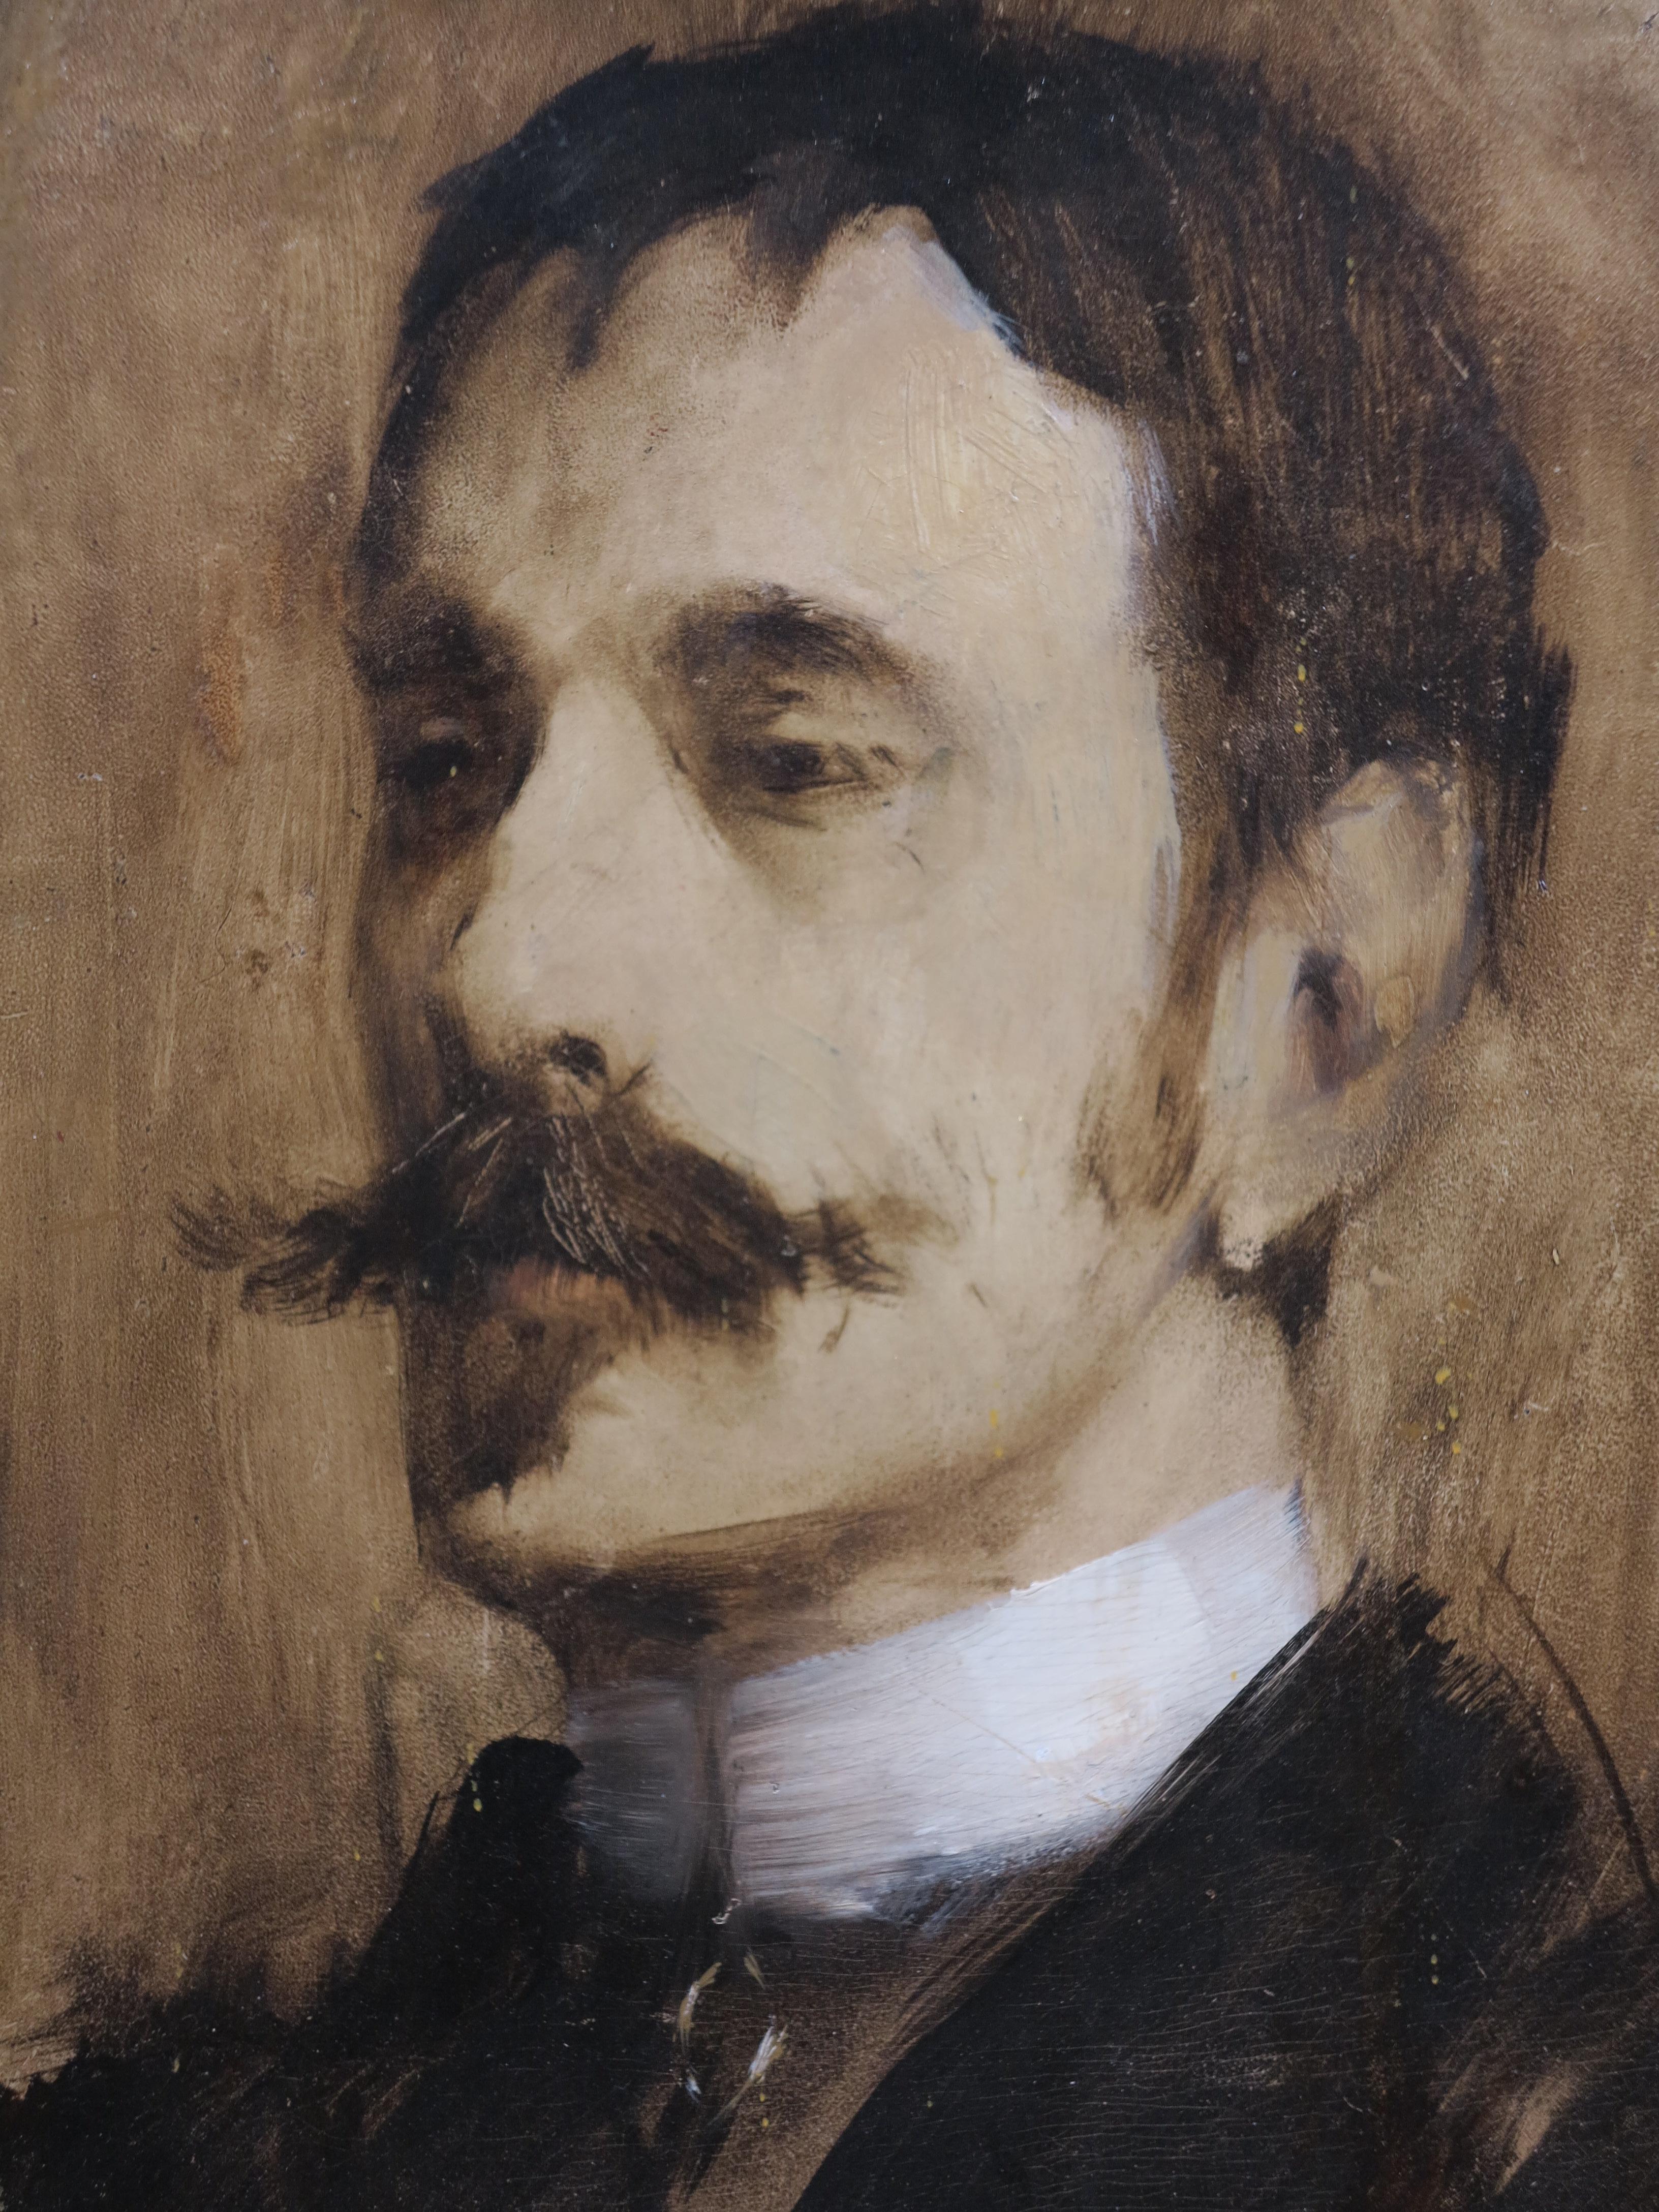  Portrait masculin (William Rapp) - Impressionnisme américain Painting par Birge Harrison